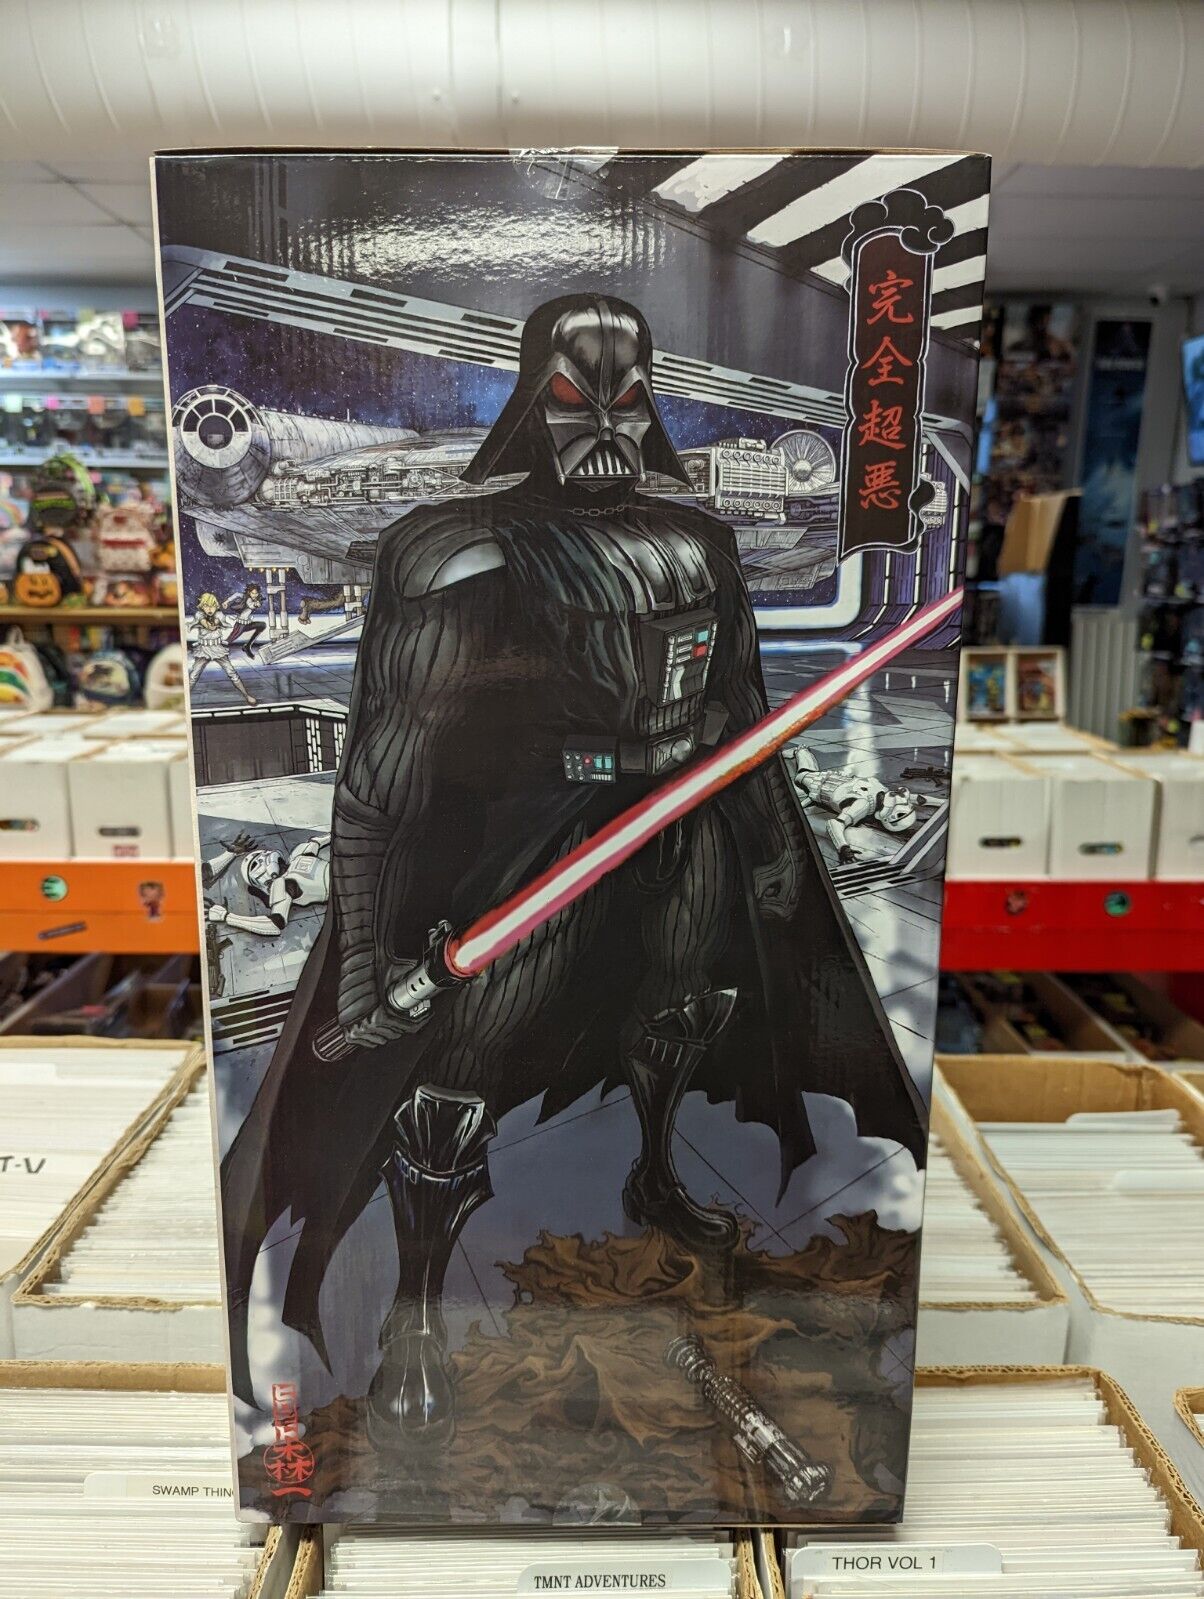 Kotobukiya ArtFX Darth Vader The Ultimate Evil 1/7 Scale Model Kit Star Wars